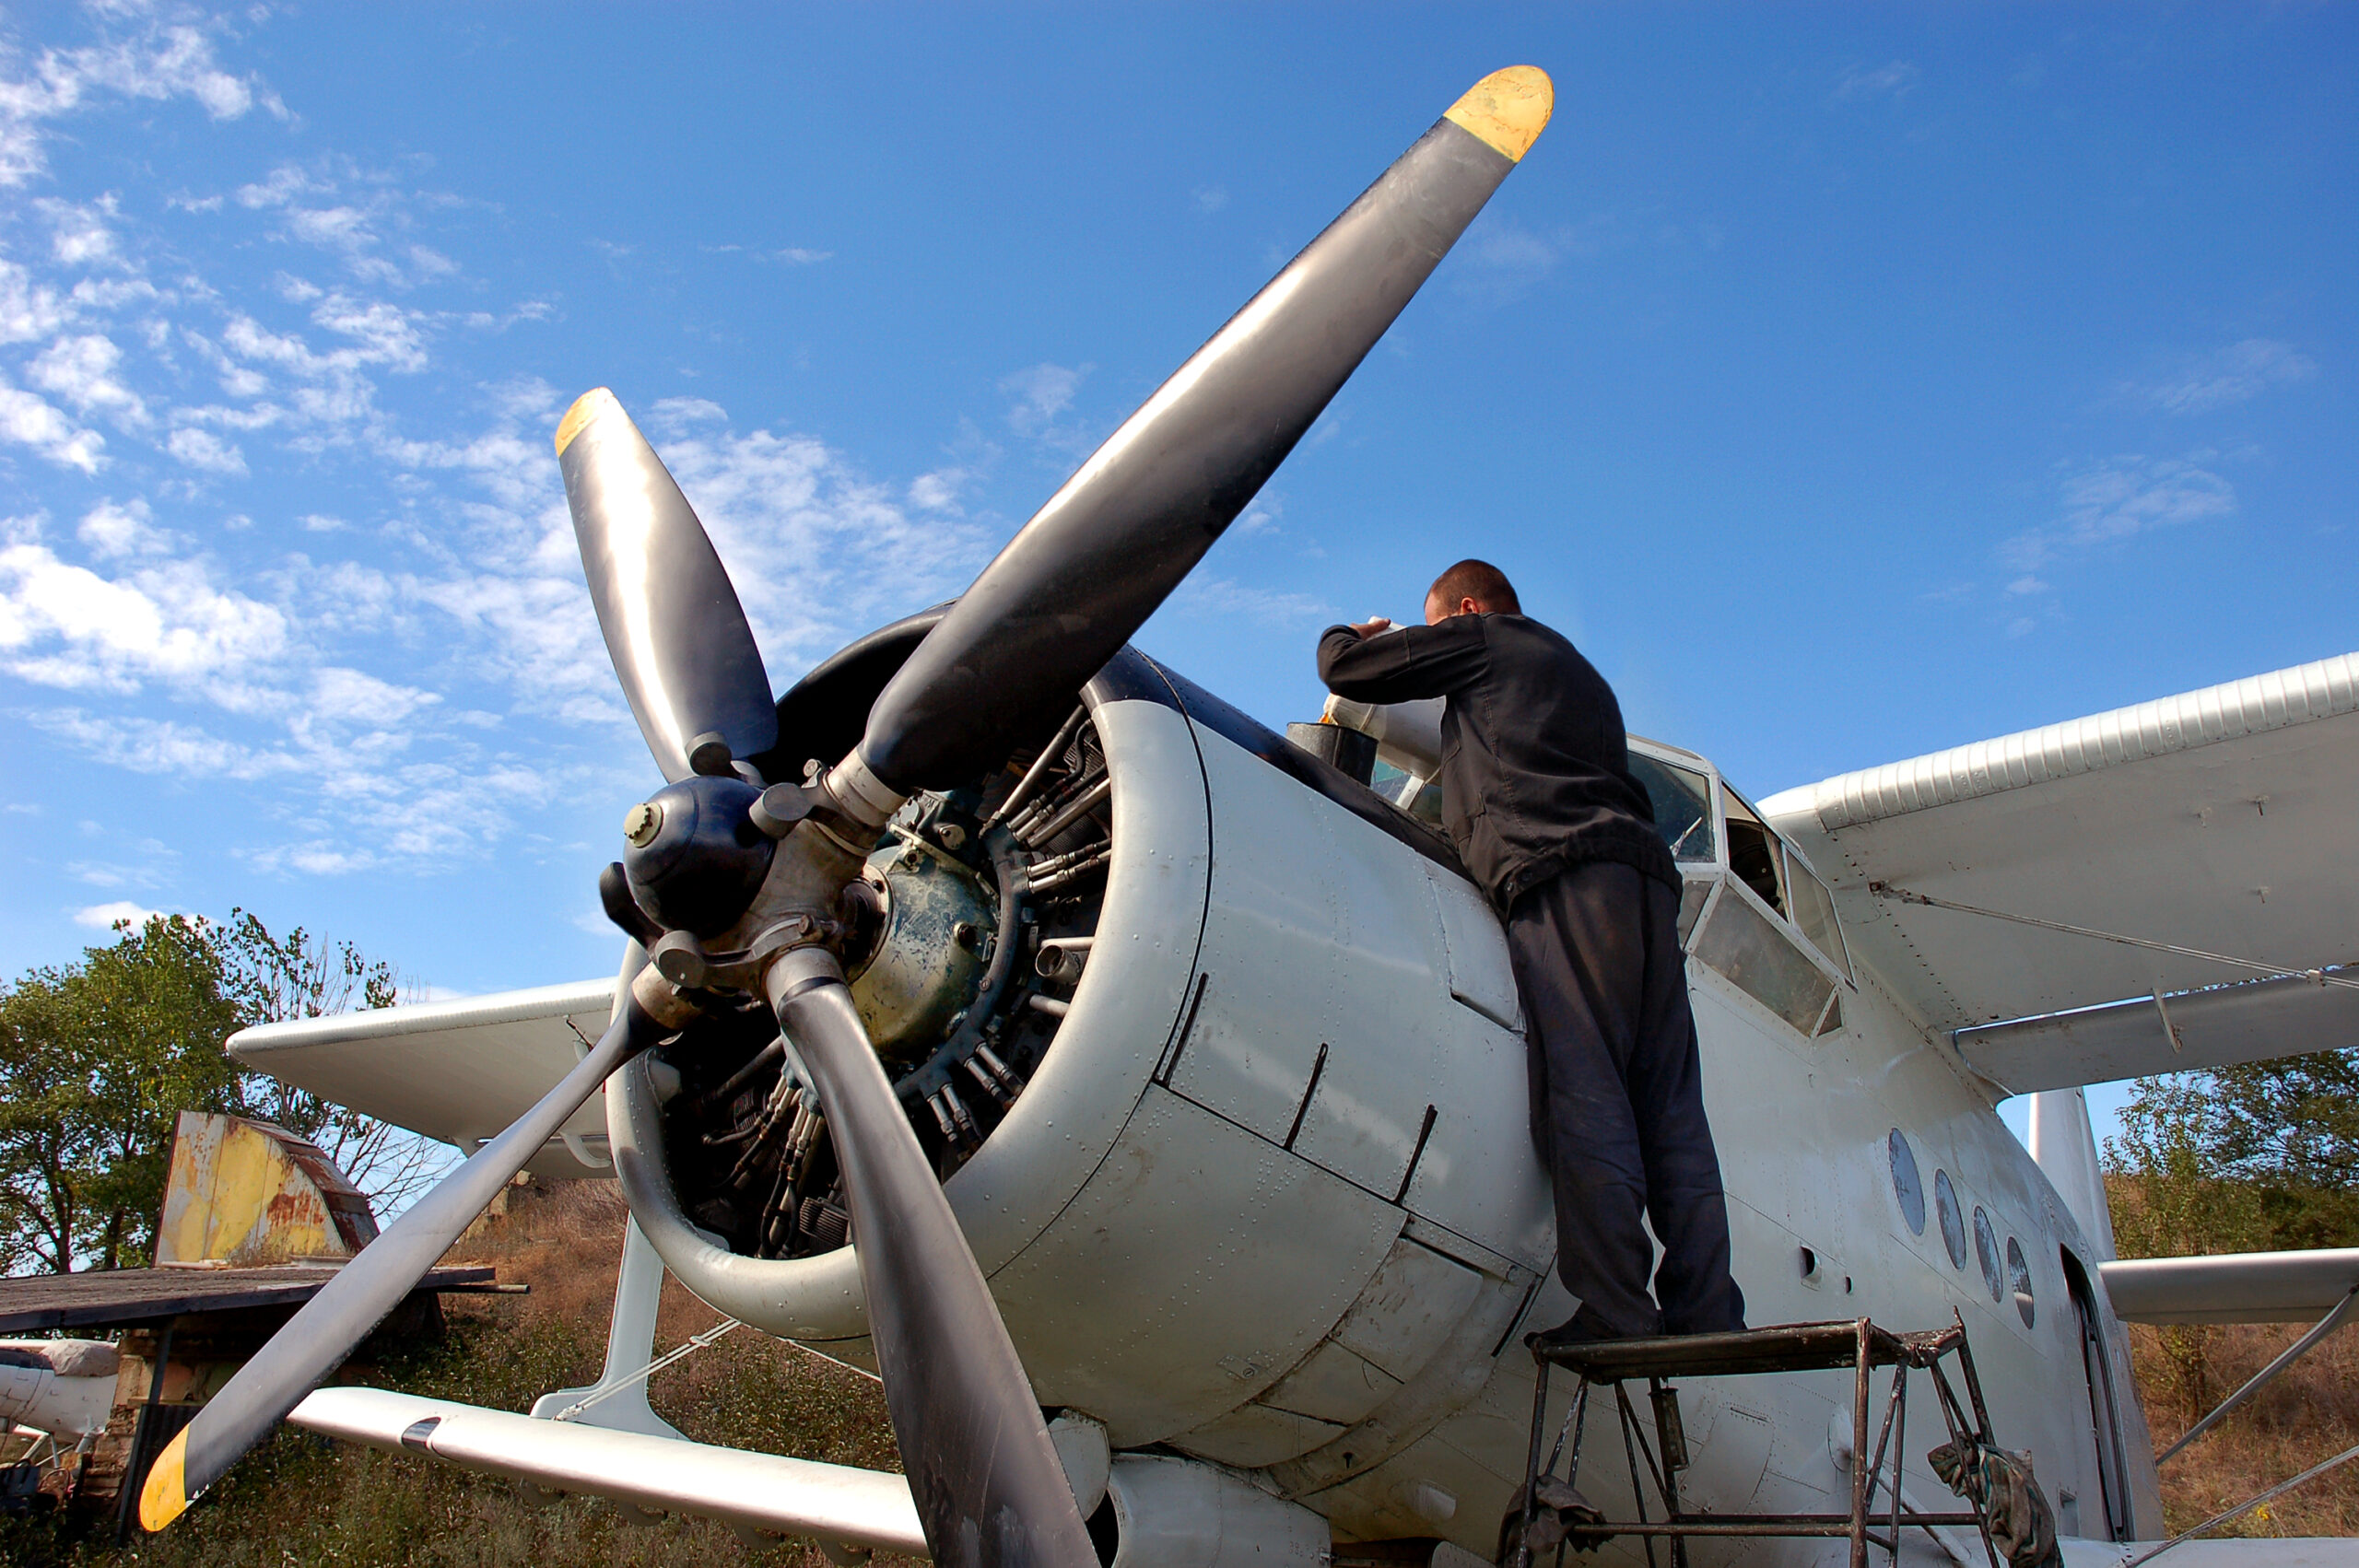 An aircraft mechanic prepares the plane for flight. First postwar Ukrainian plane AN-2.